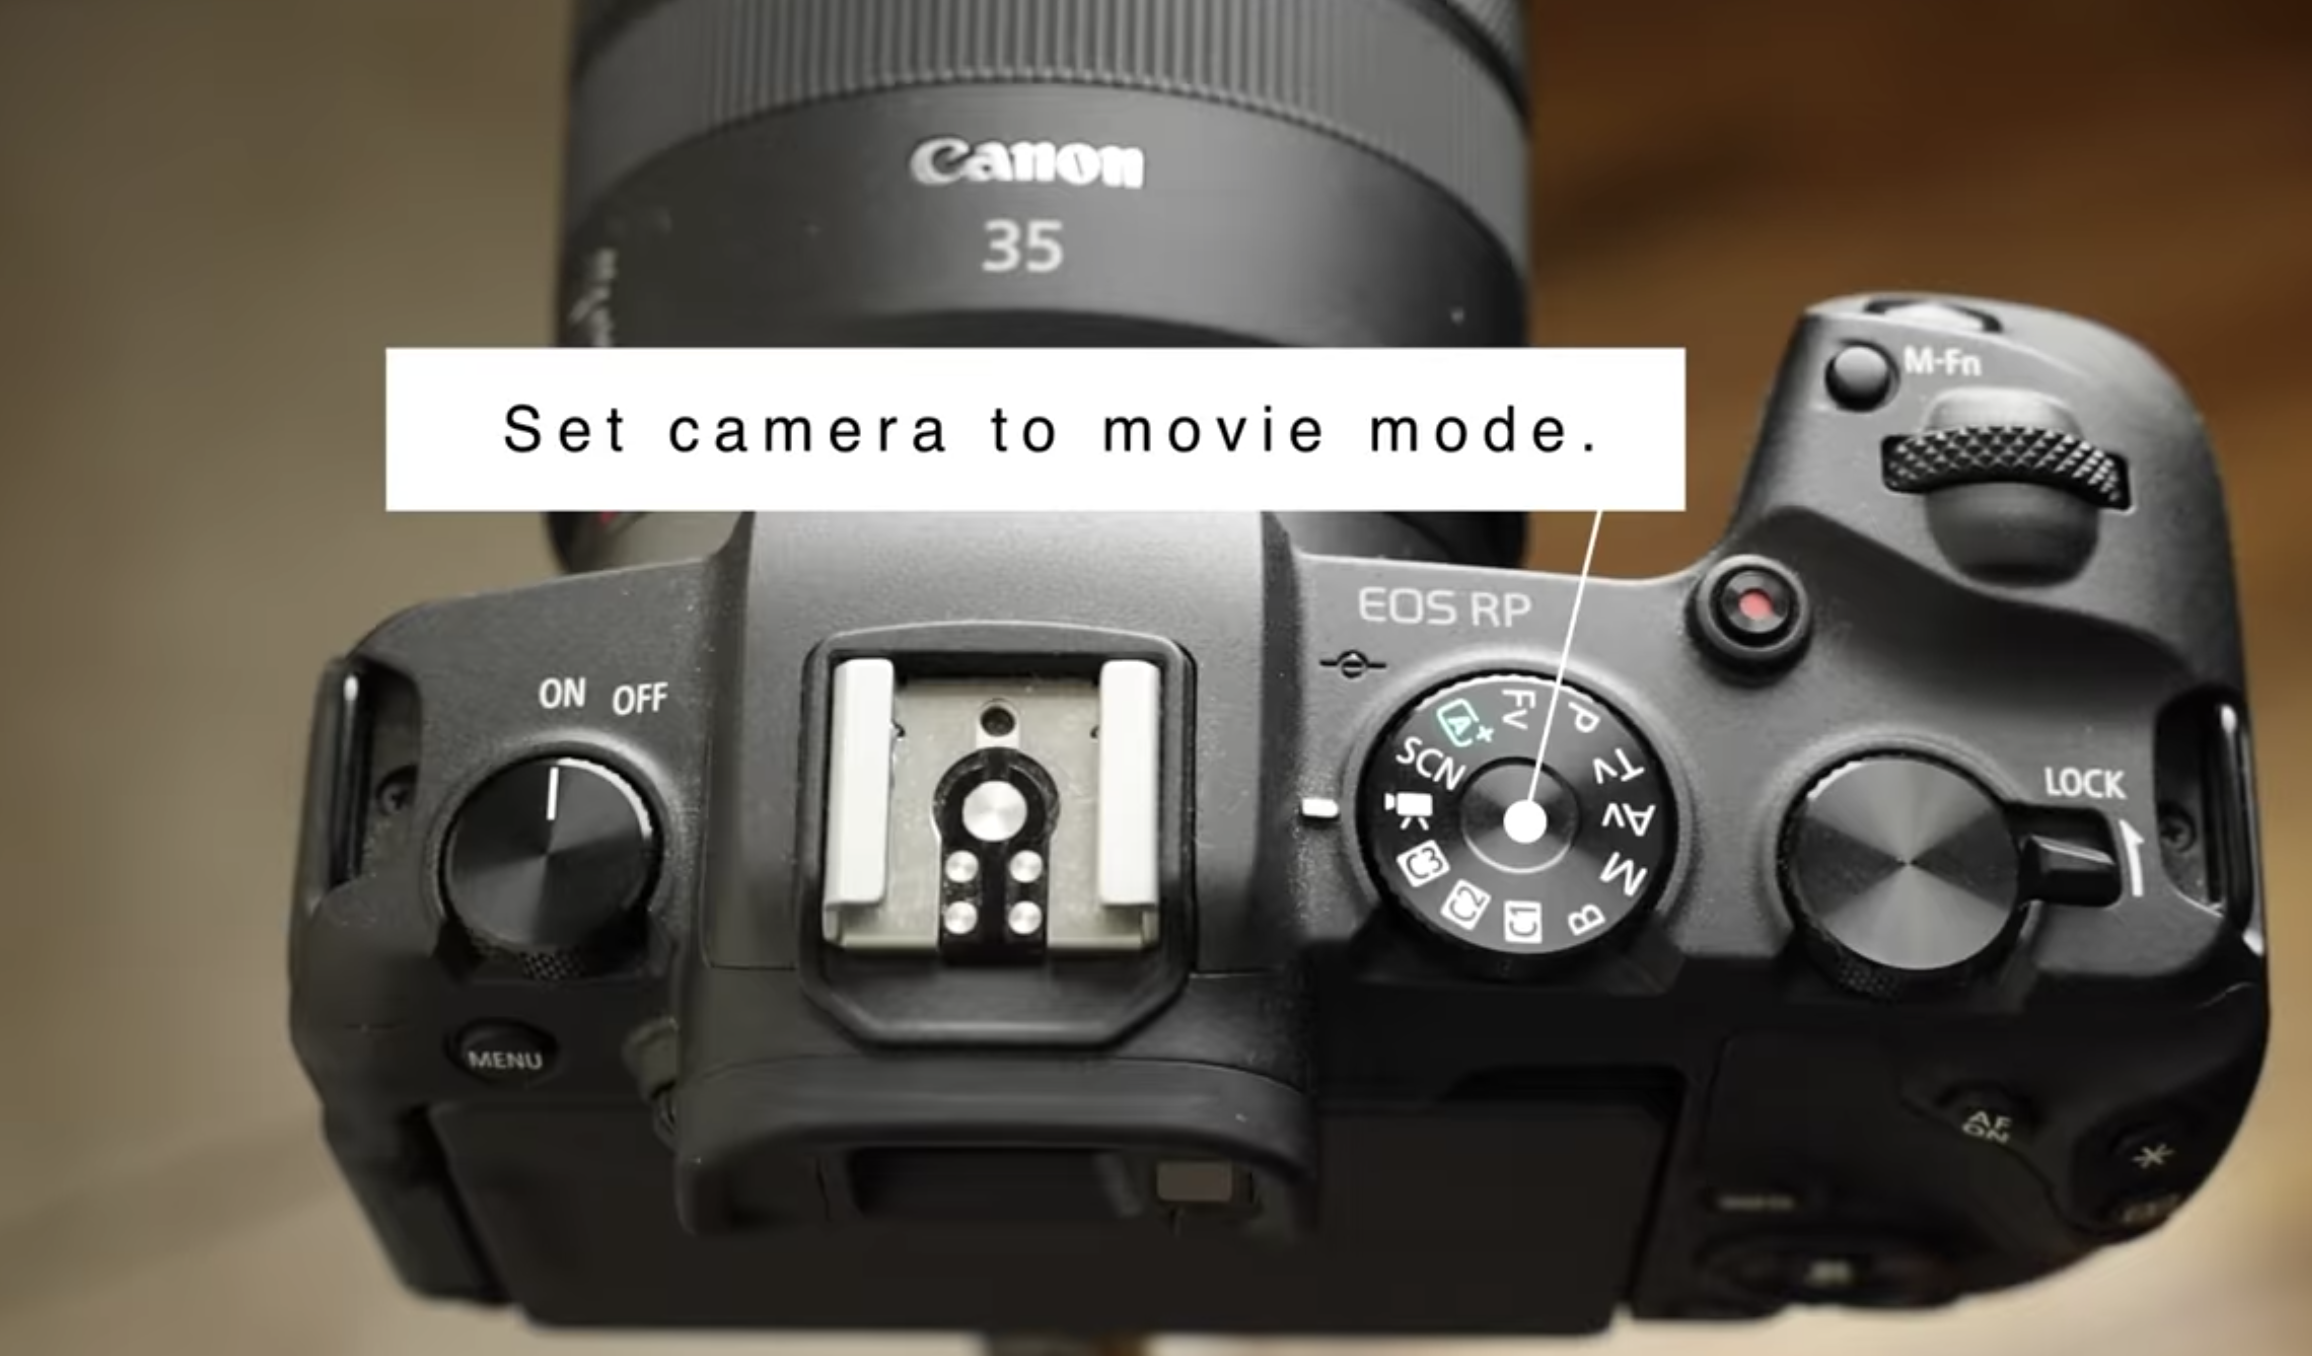 Canon webcam camera